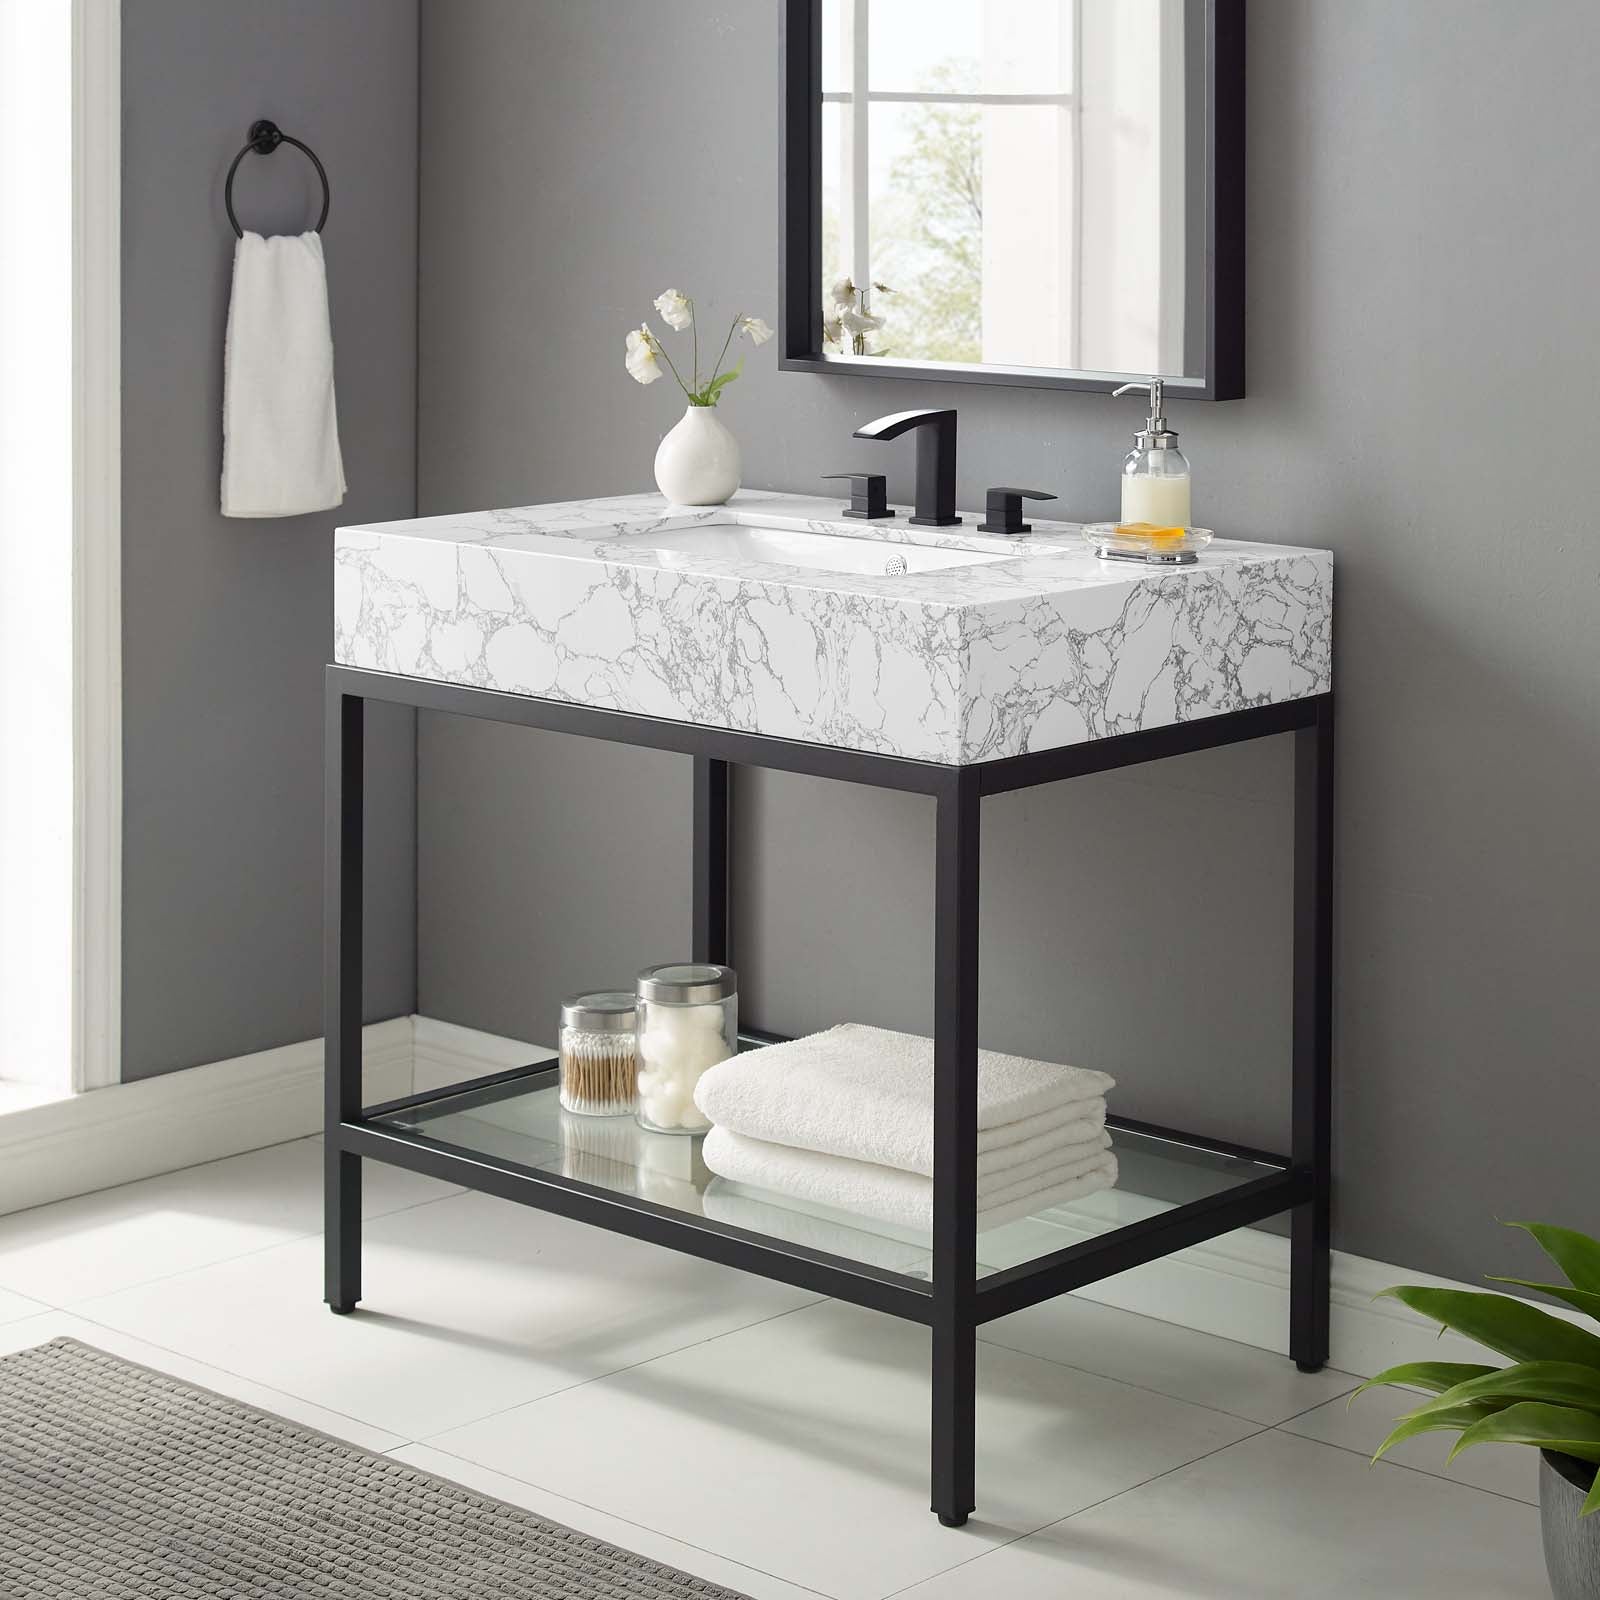 Modway Bathroom Vanity - Kingsley 36" Black Stainless Steel Bathroom Vanity Black White